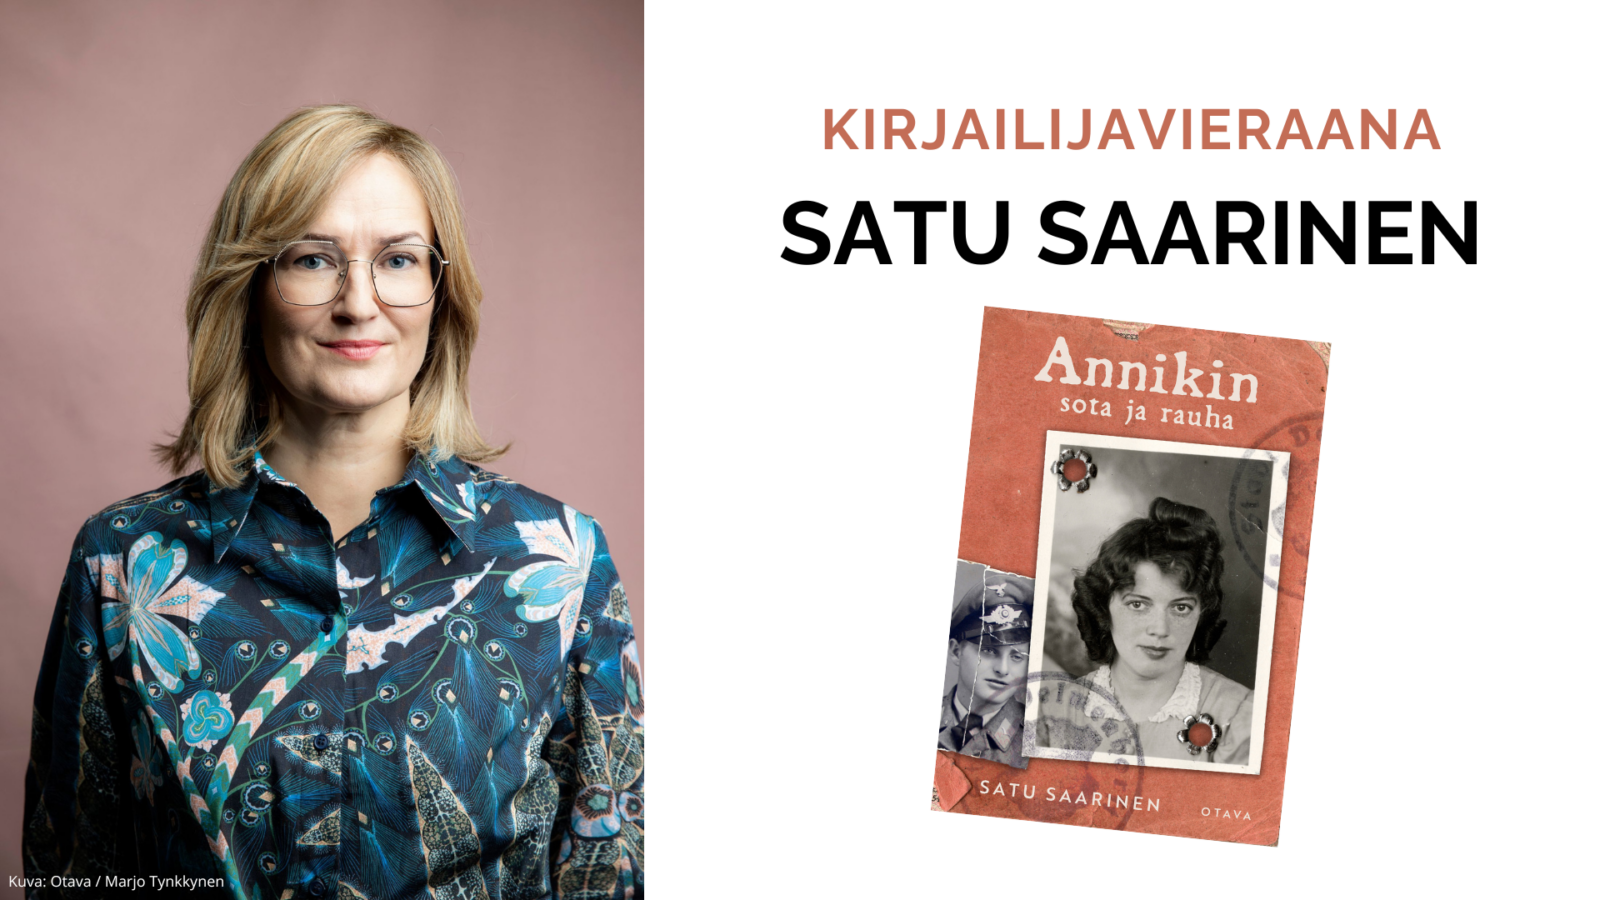 Kirjailijavieraana Satu Saarinen Tornion kirjastossa ti 28.5.